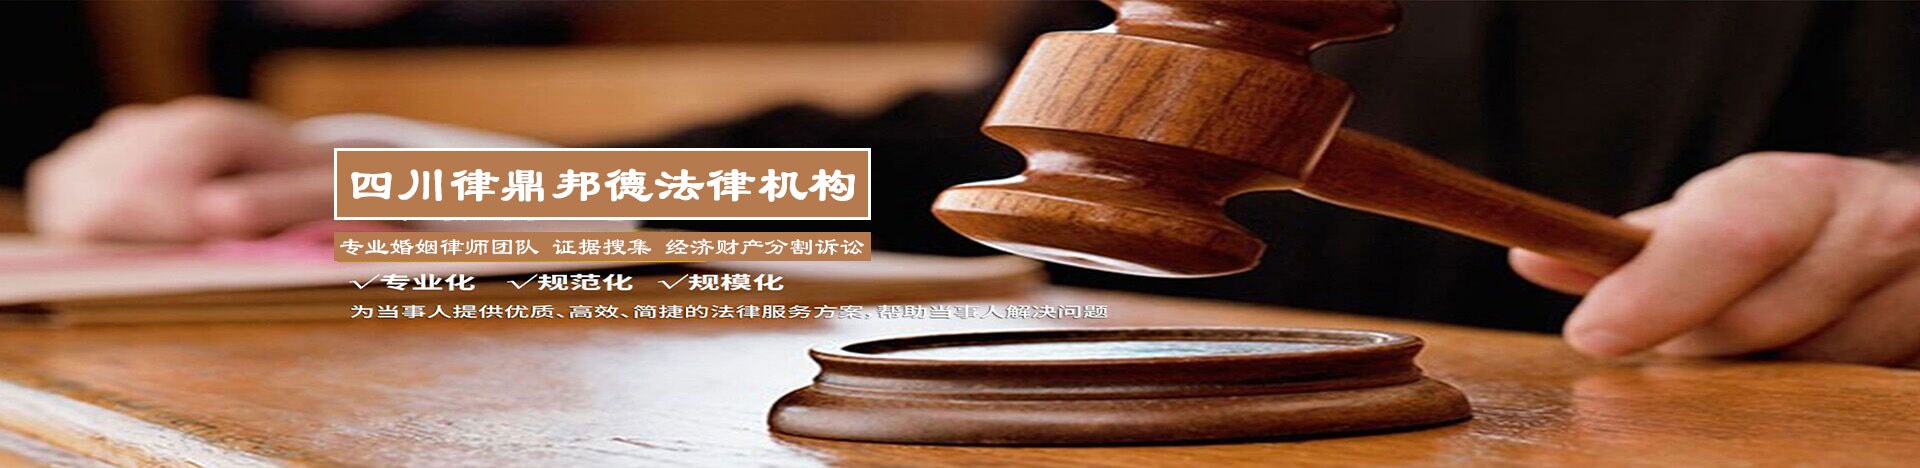 上海离婚取证公司哪里有 离婚案件中视听资料证据特点及应注意问题 录音证据的取证技巧-律鼎头条-【推荐】律鼎邦德离婚取证诉讼【1588 2222 007】婚姻律师|离婚取证咨询公司-